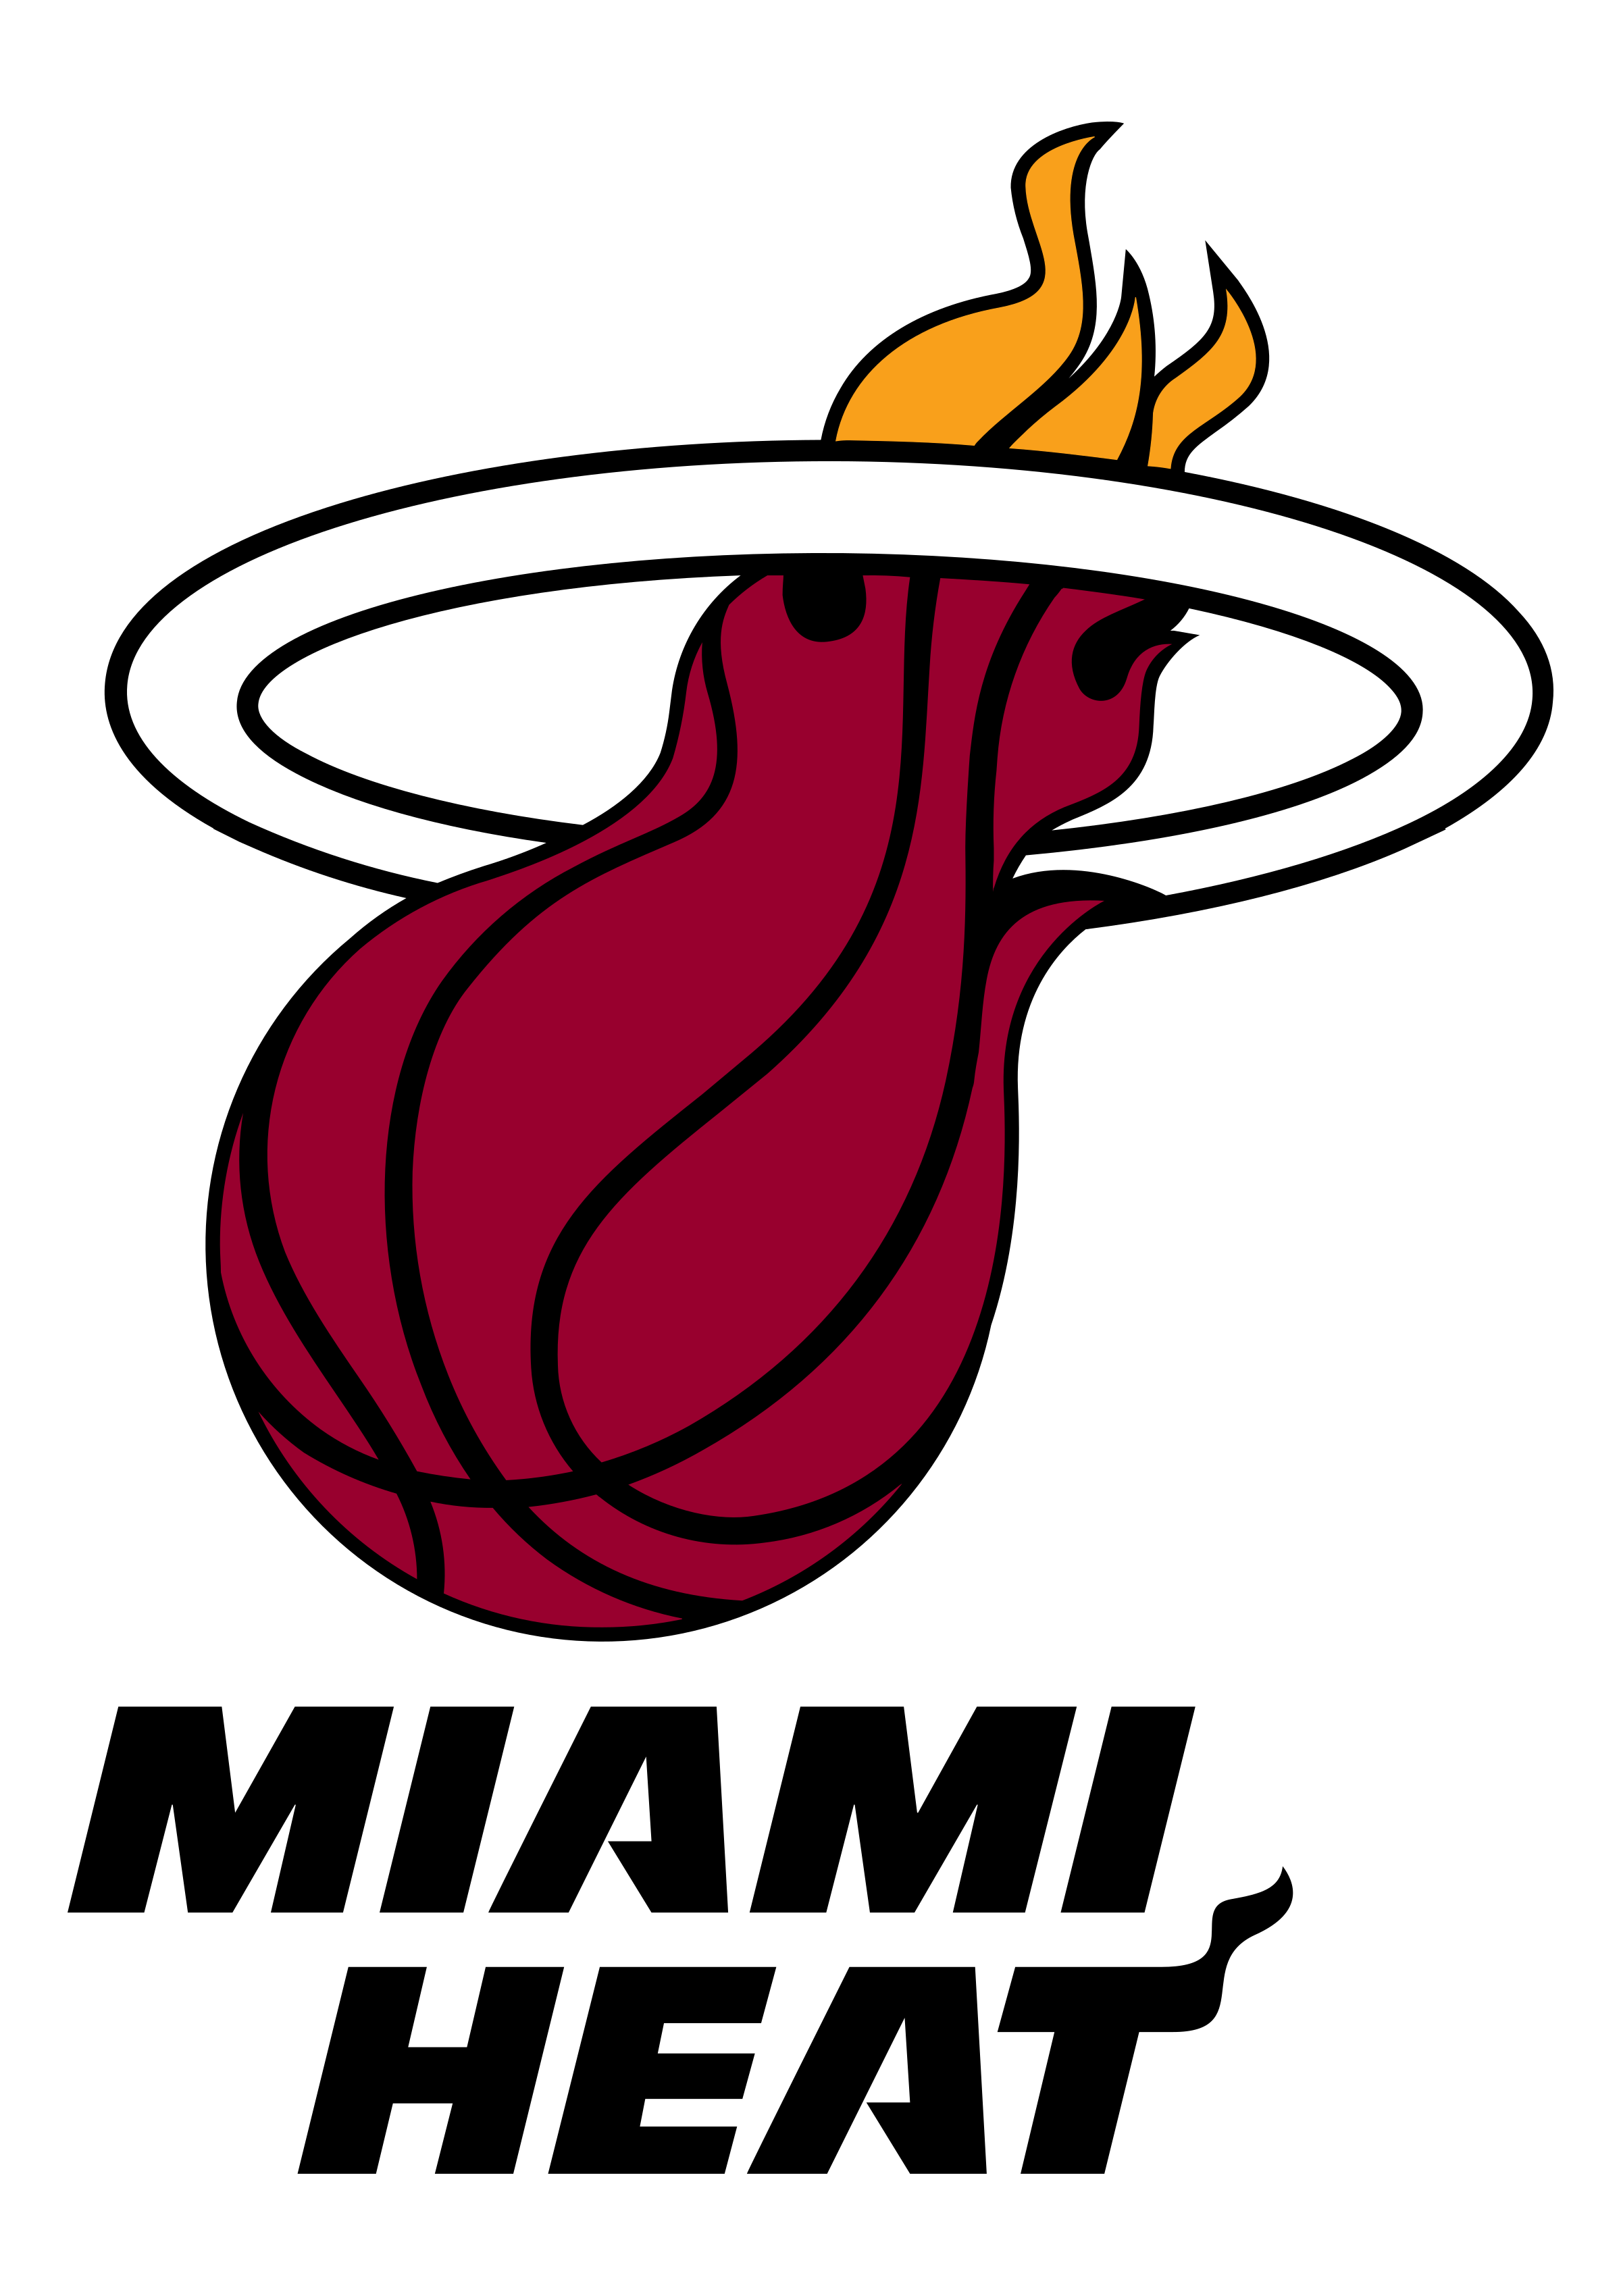 Miami Heat Logo PNG Image